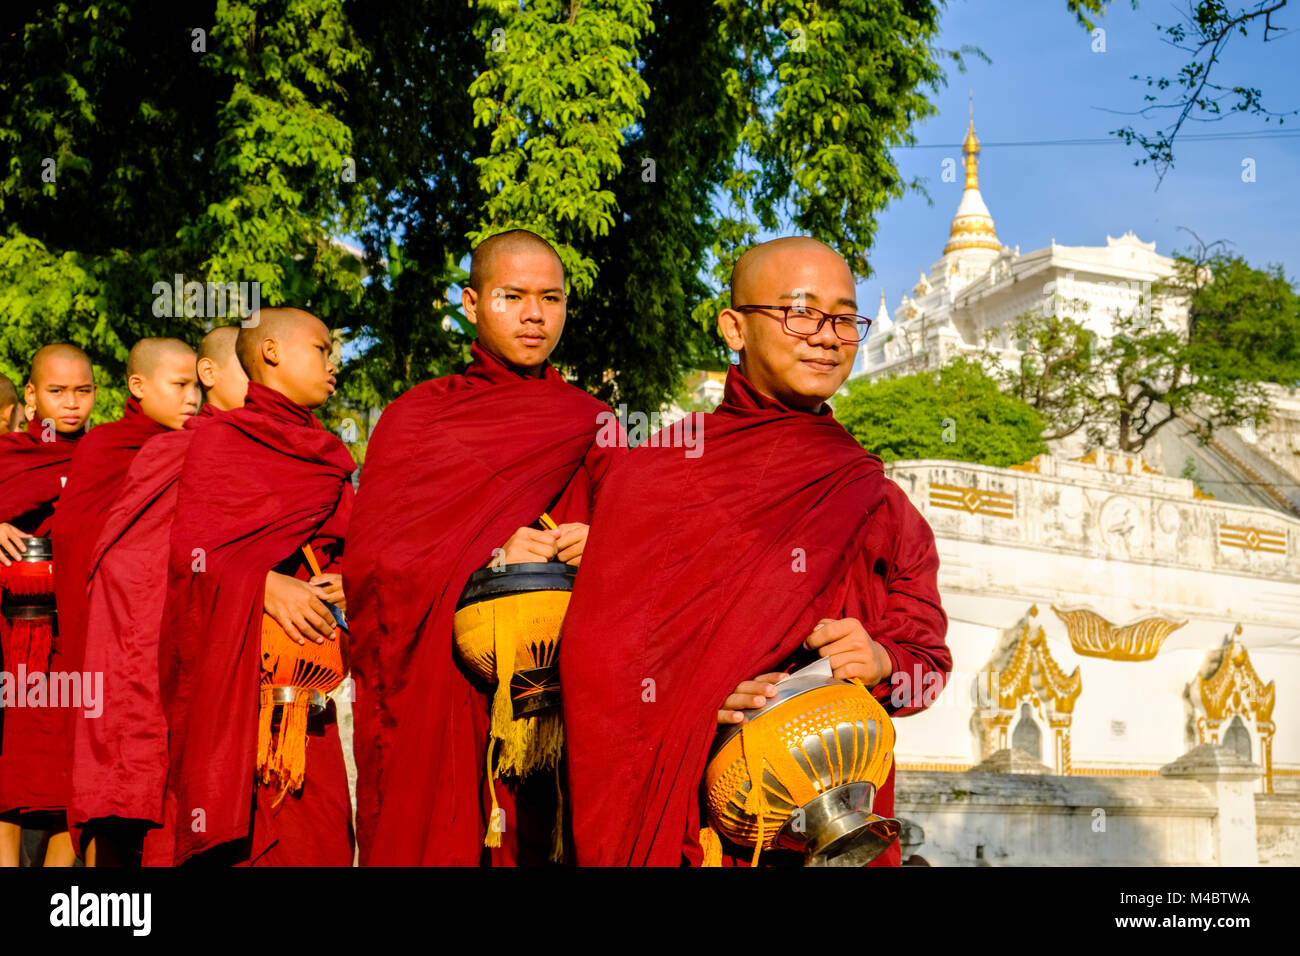 Los monjes budistas están haciendo cola en una larga fila para recibir donaciones en un monasterio Foto de stock